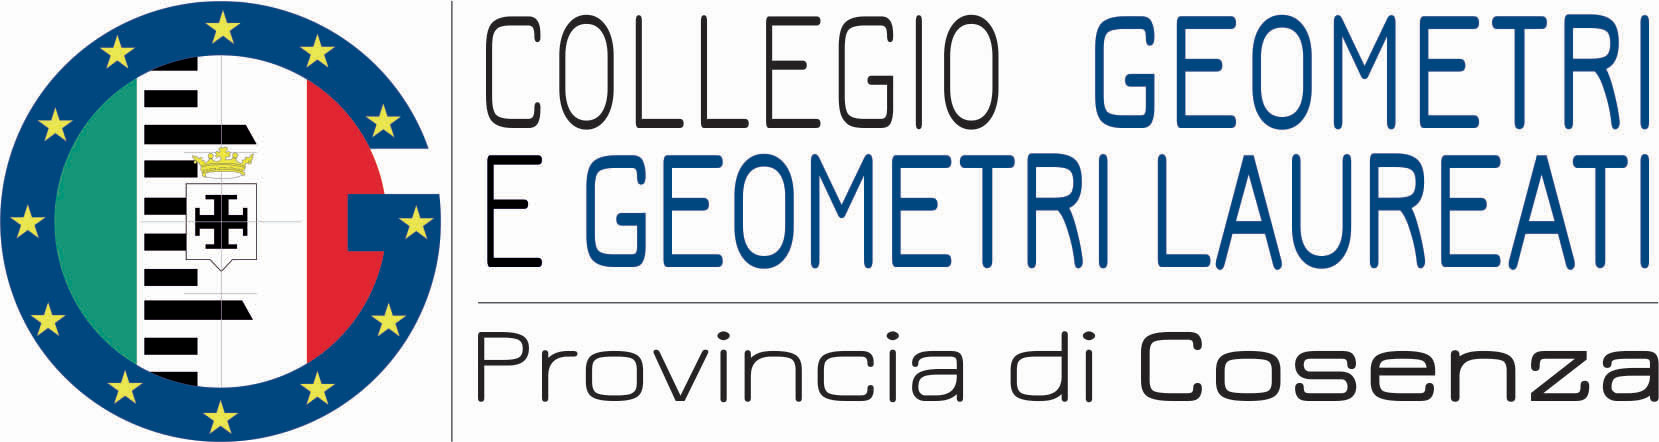 Collegio Geometri e Geometri Laureati Provincia di Cosenza